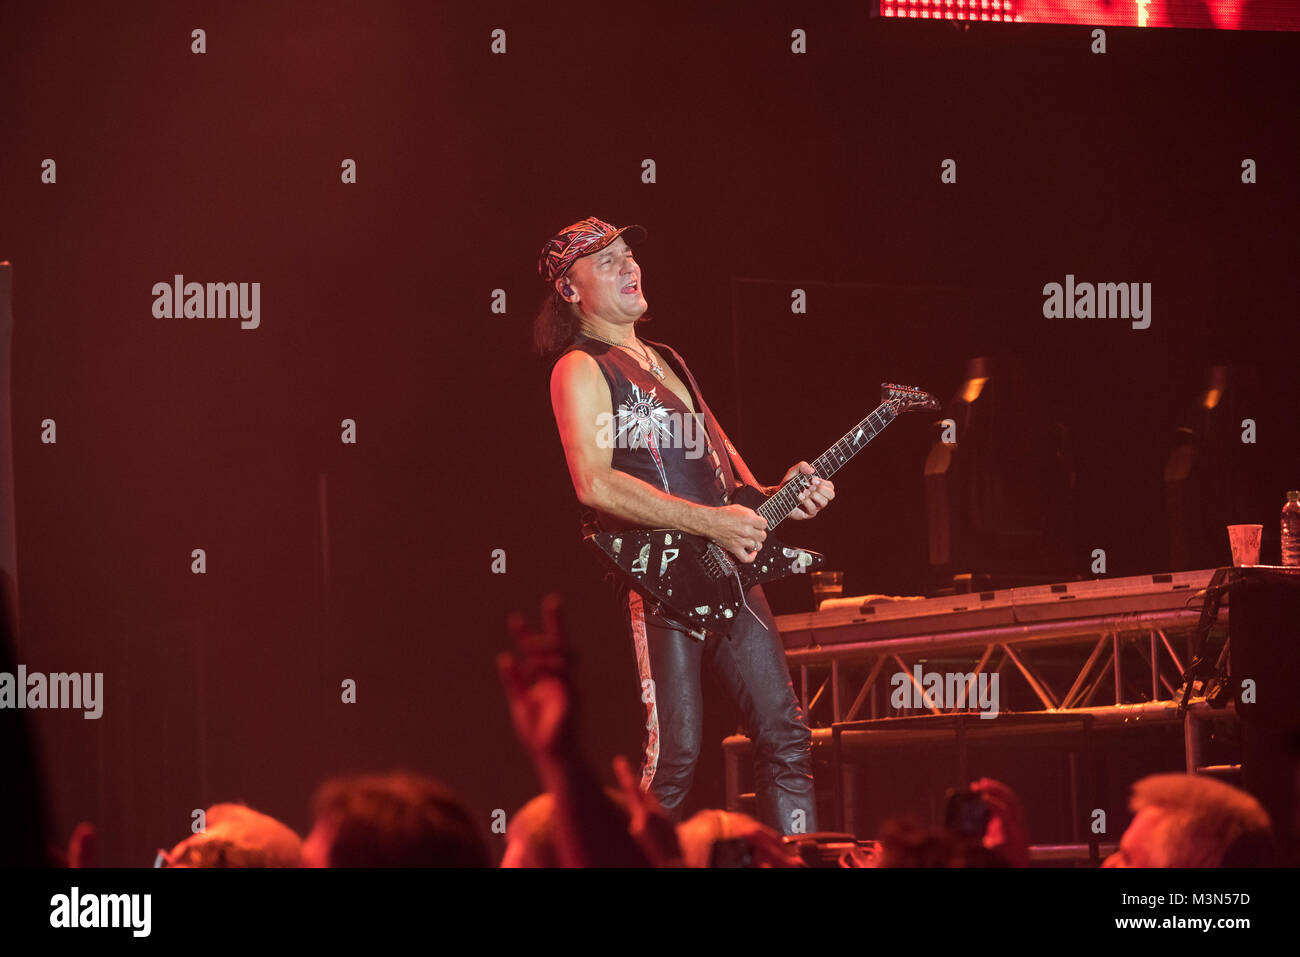 Die deutsche Hard Rock und Heavy Metal-Band Scorpions rockte am 27.11.2016 die Frankfurter Festhalle. Stock Photo